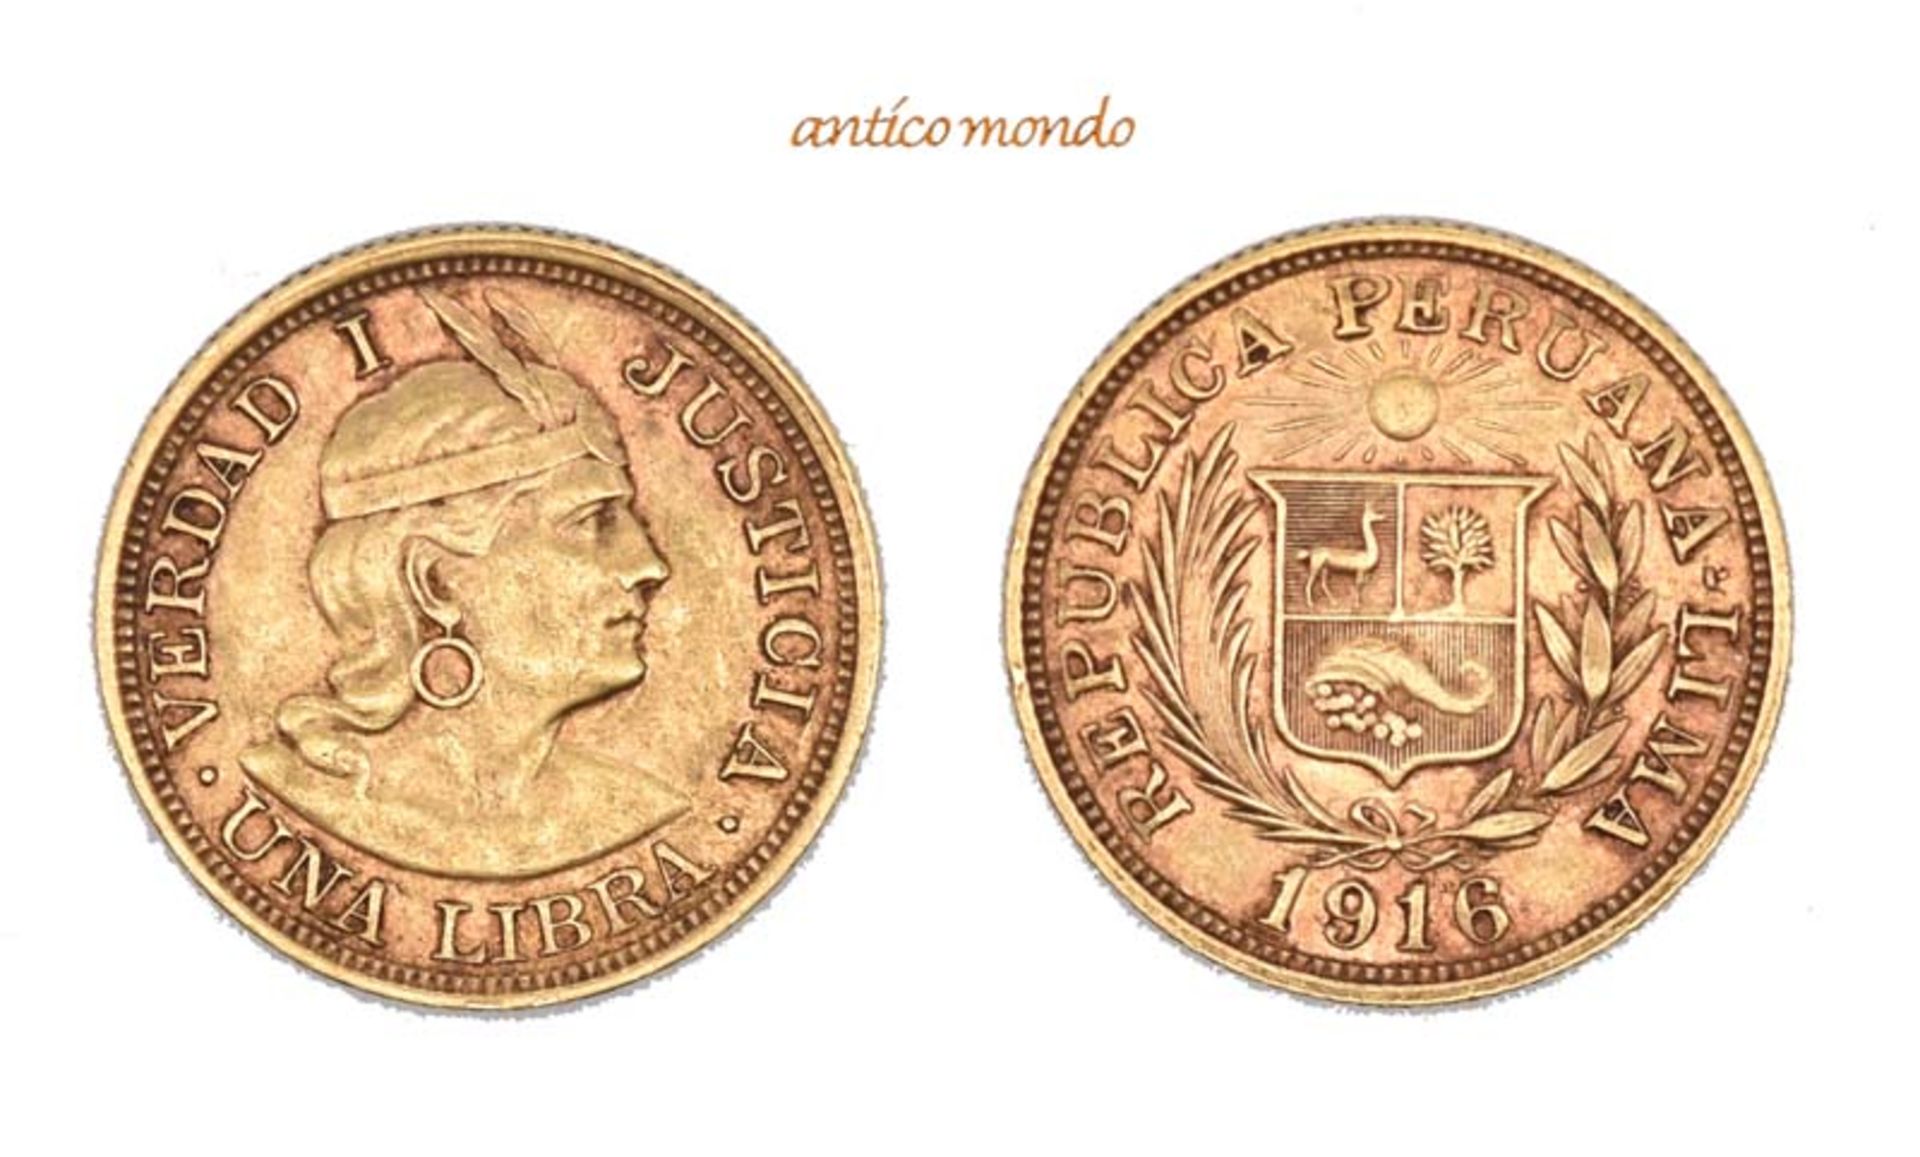 Peru, Republik, Libra, 1916, sehr schön-vorzüglich, 8,00 g- - -21.50 % buyer's premium on the hammer